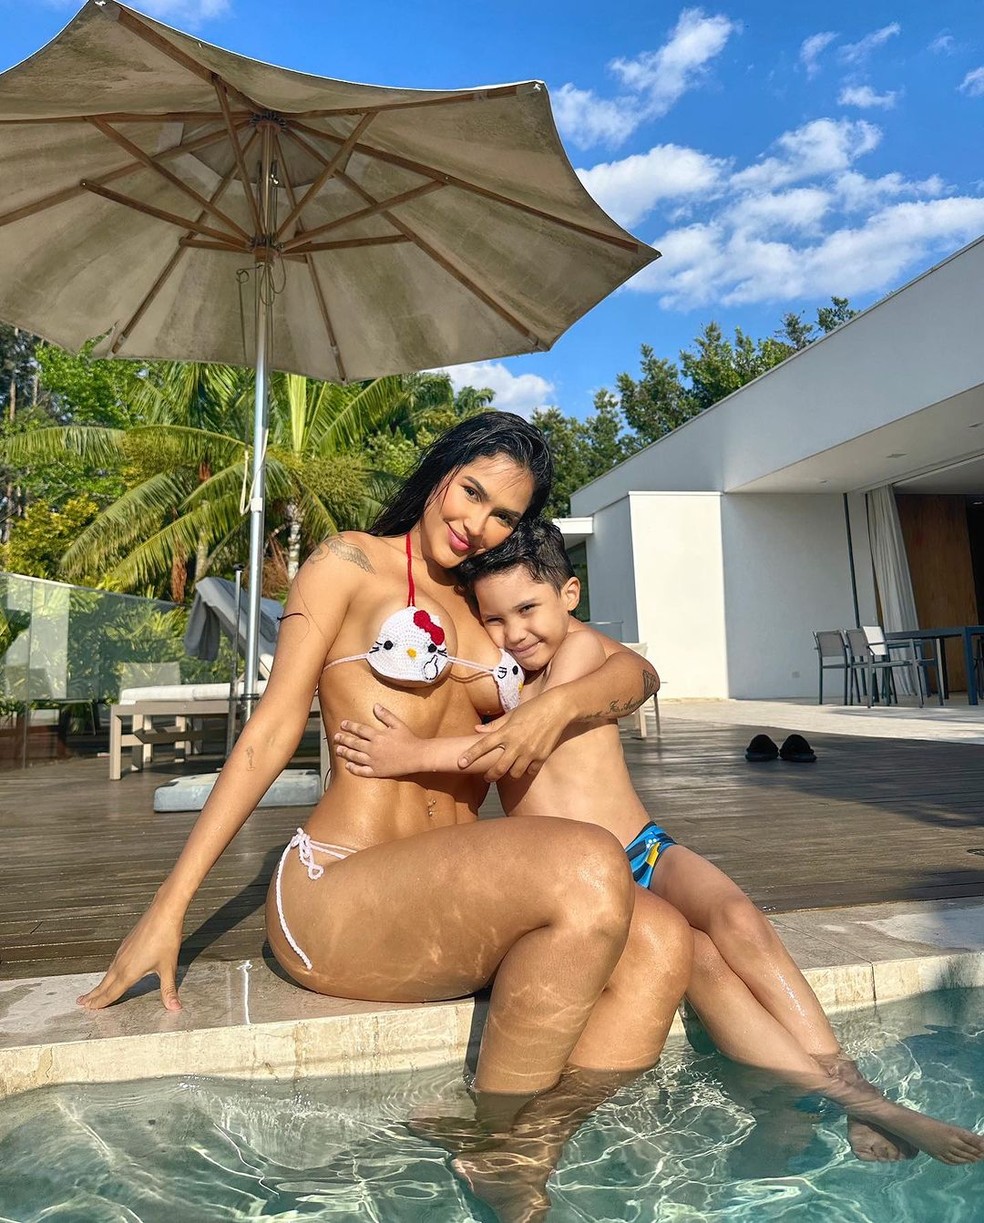 Flay posa com o filho na piscina e se derrete: 'Somos sempre você e eu' — Foto: reprodução/instagram